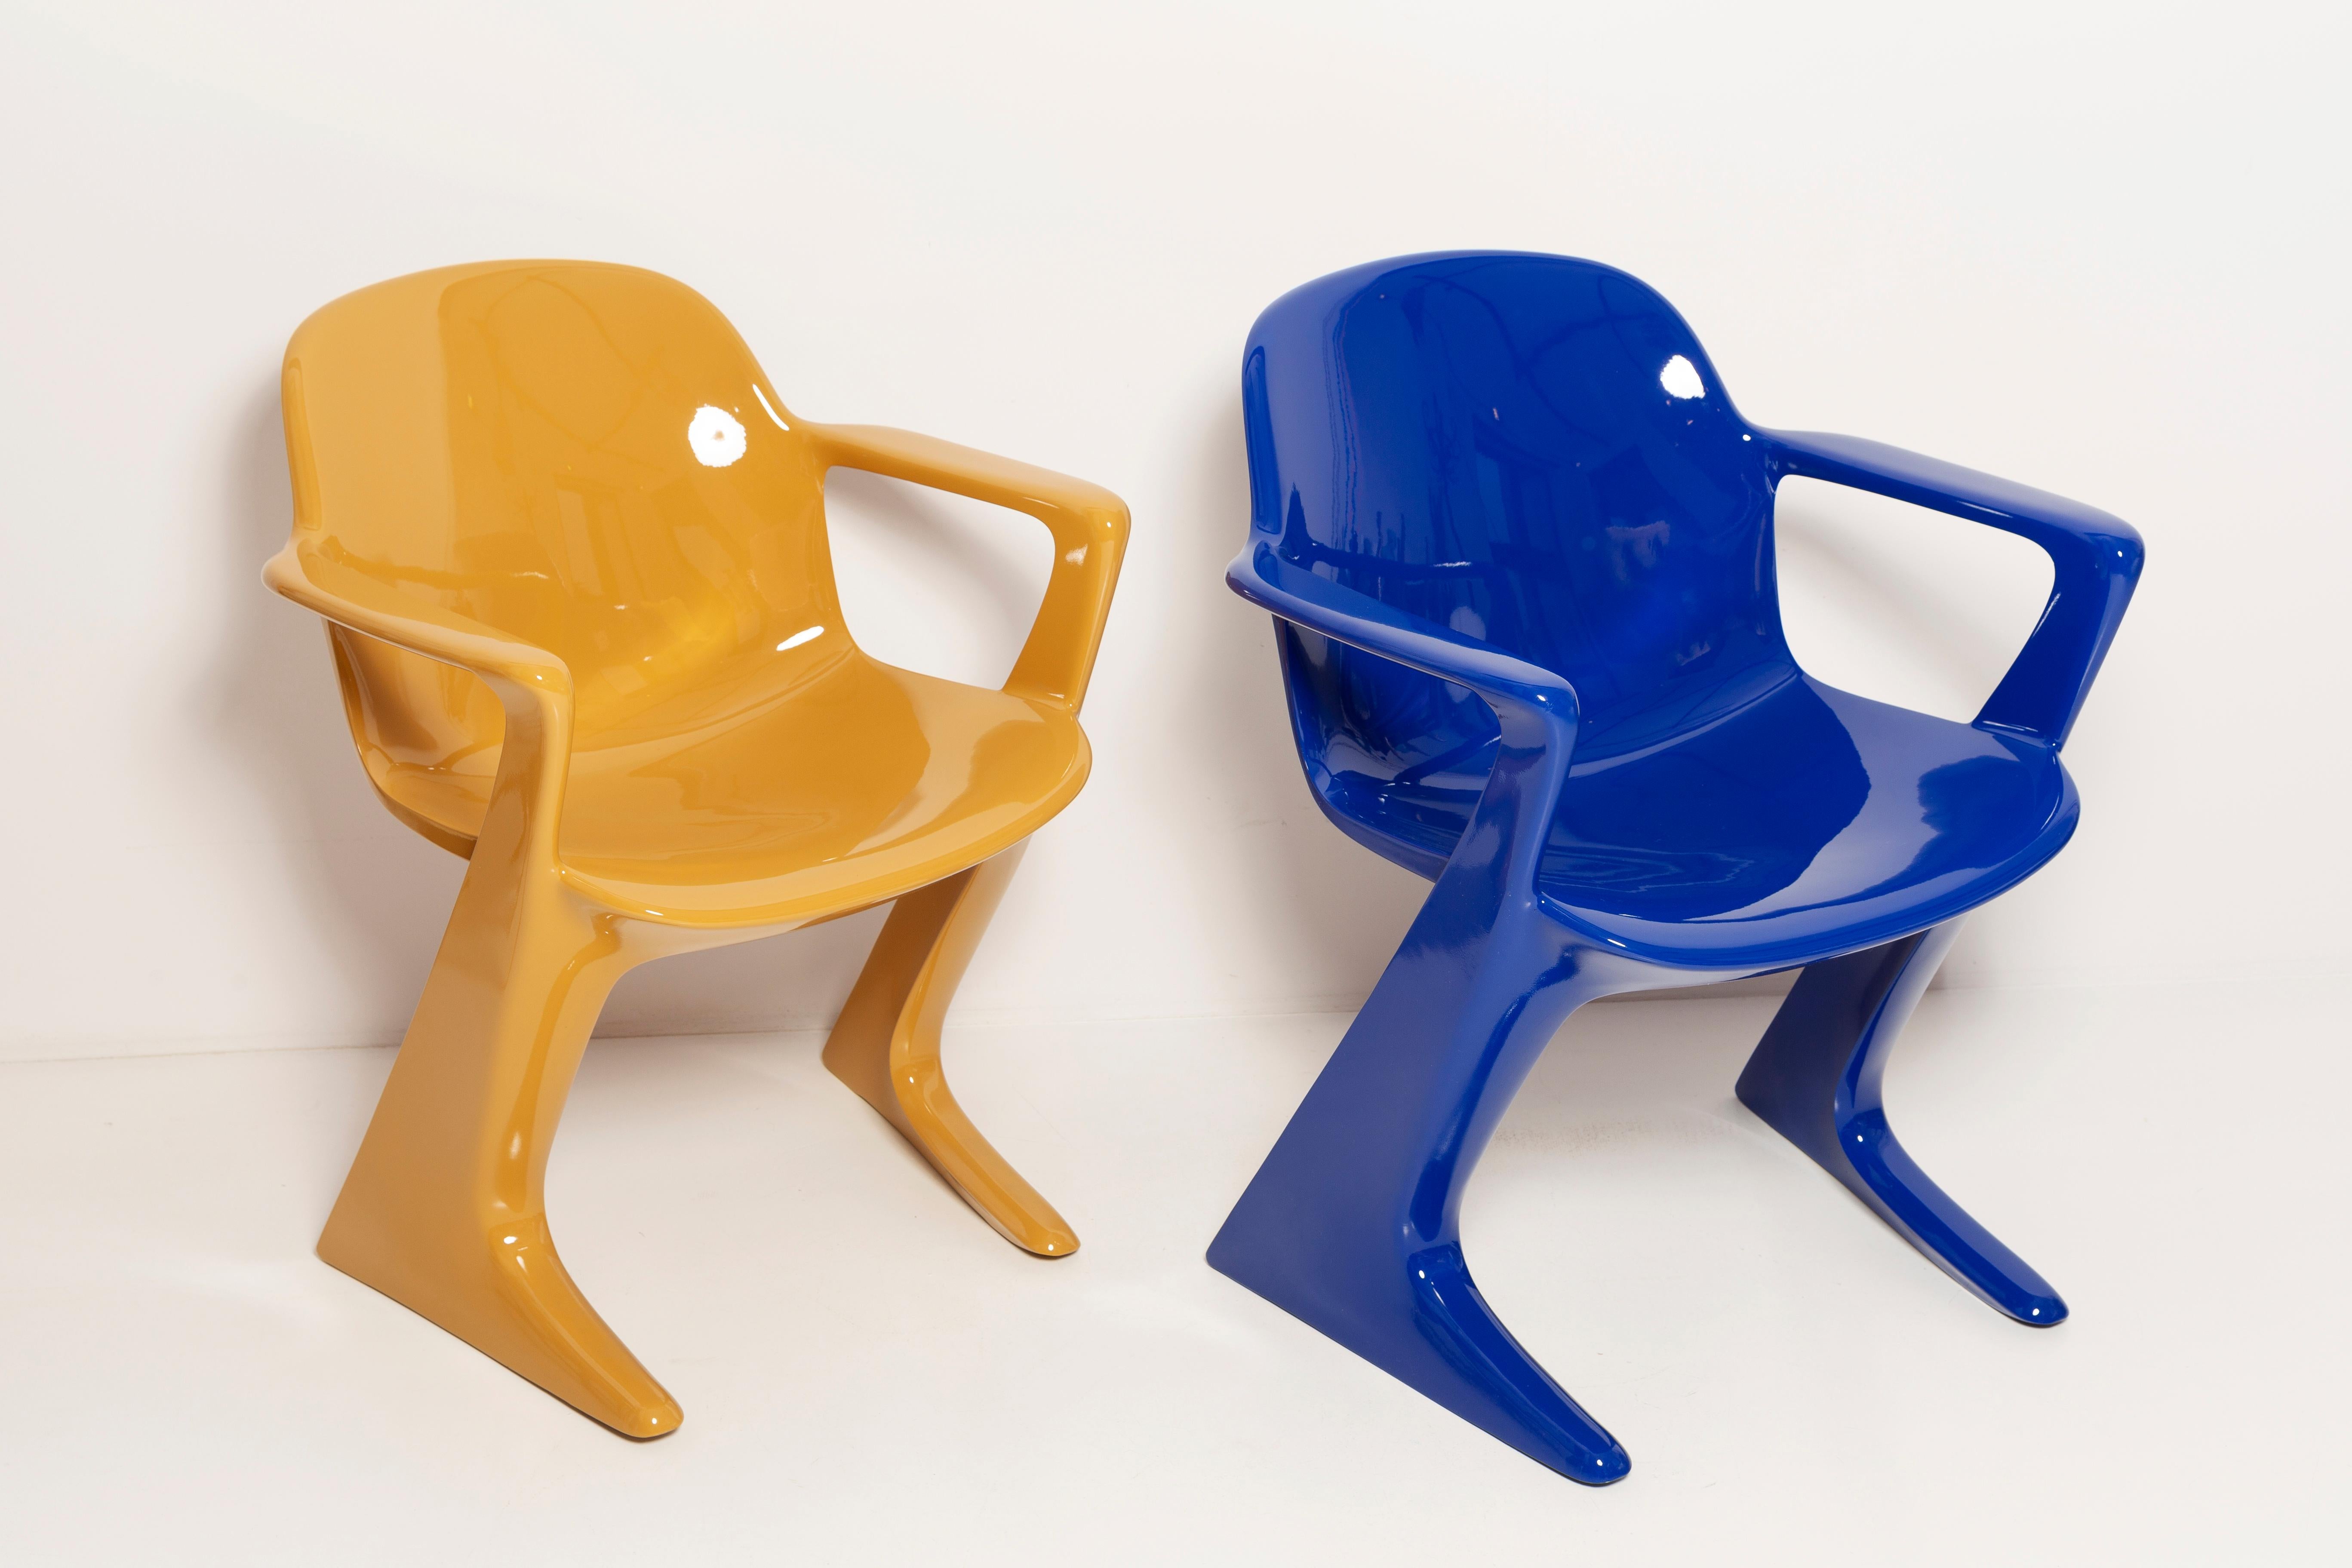 La chaise z.stuhl, conçue par Ernst Moeckl (1931-2013) dans les années 1970, est une chaise cantilever en polyuréthane, disponible avec ou sans accoudoirs. Dans le langage courant, la chaise est connue sous des noms liés à la géométrie tels que